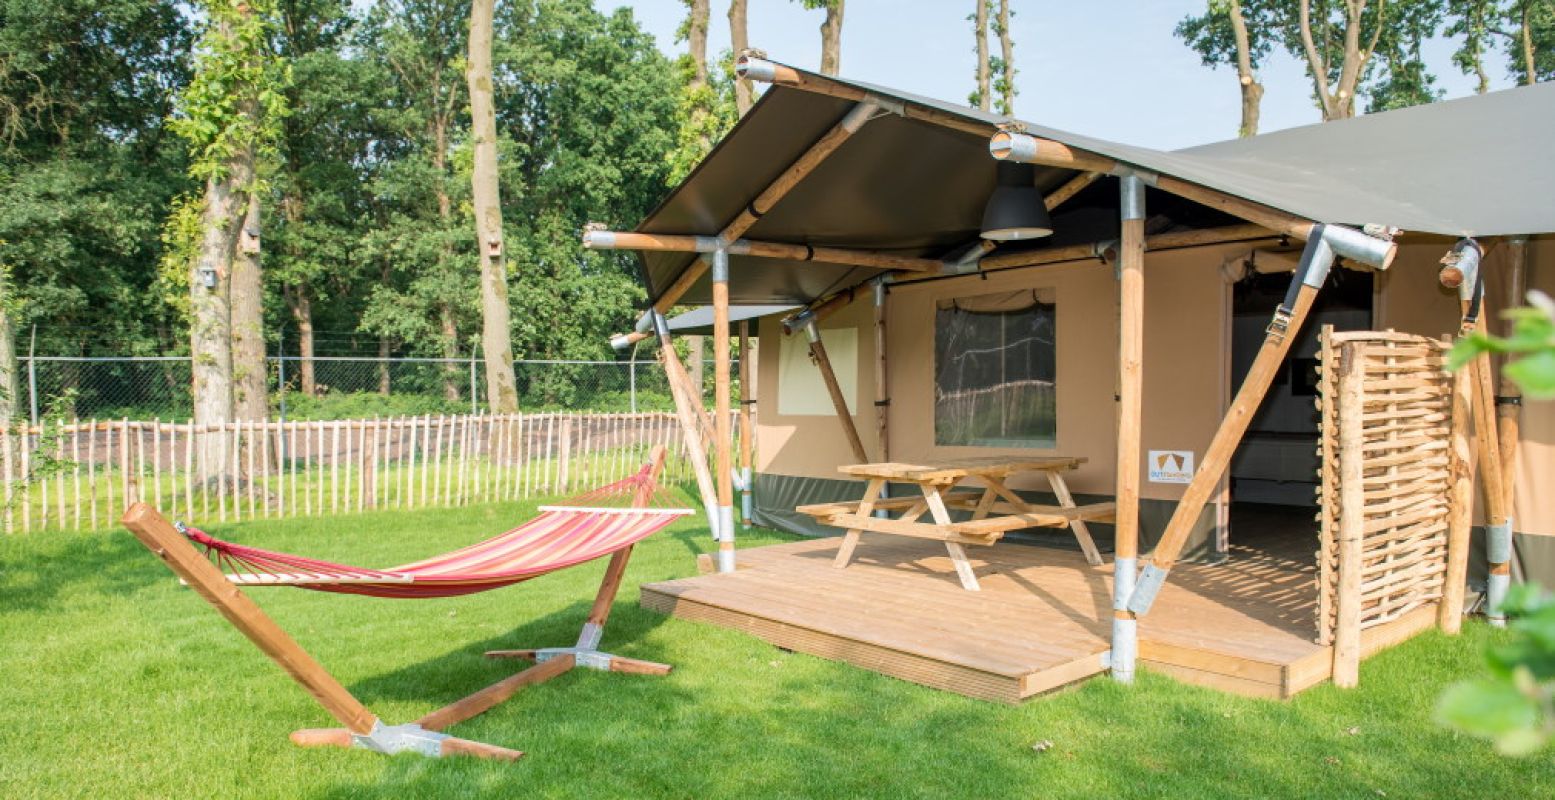 Luxe kamperen in een safaritent op Camping De Midden Veluwe. Foto: Visit Veluwe